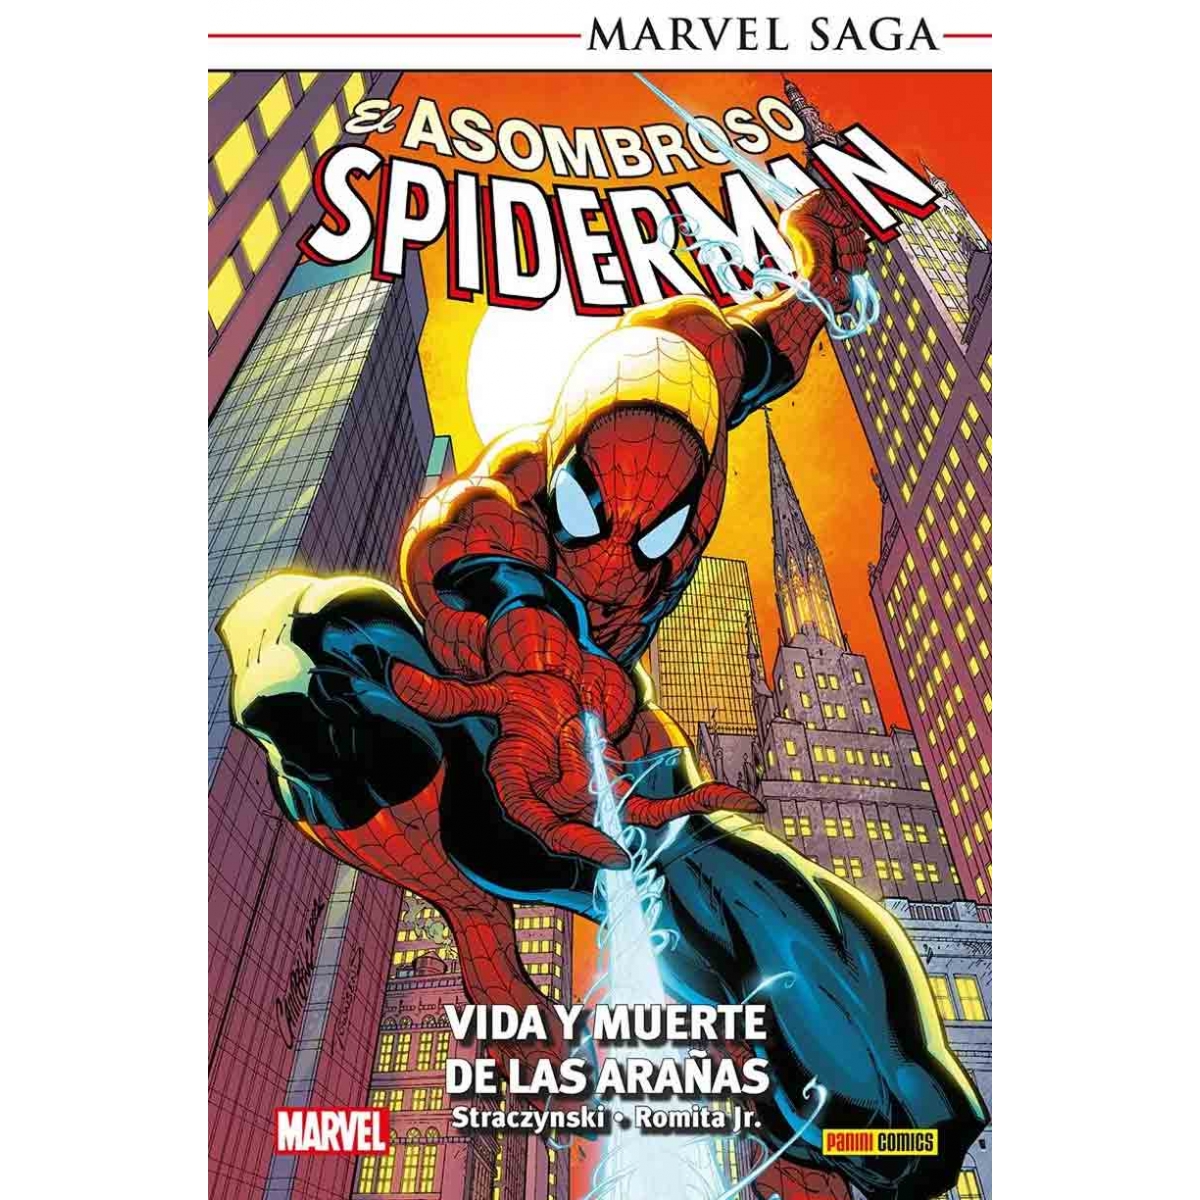 El Asombroso Spiderman 03 Vida y Muerte de las Arañas Marvel Saga